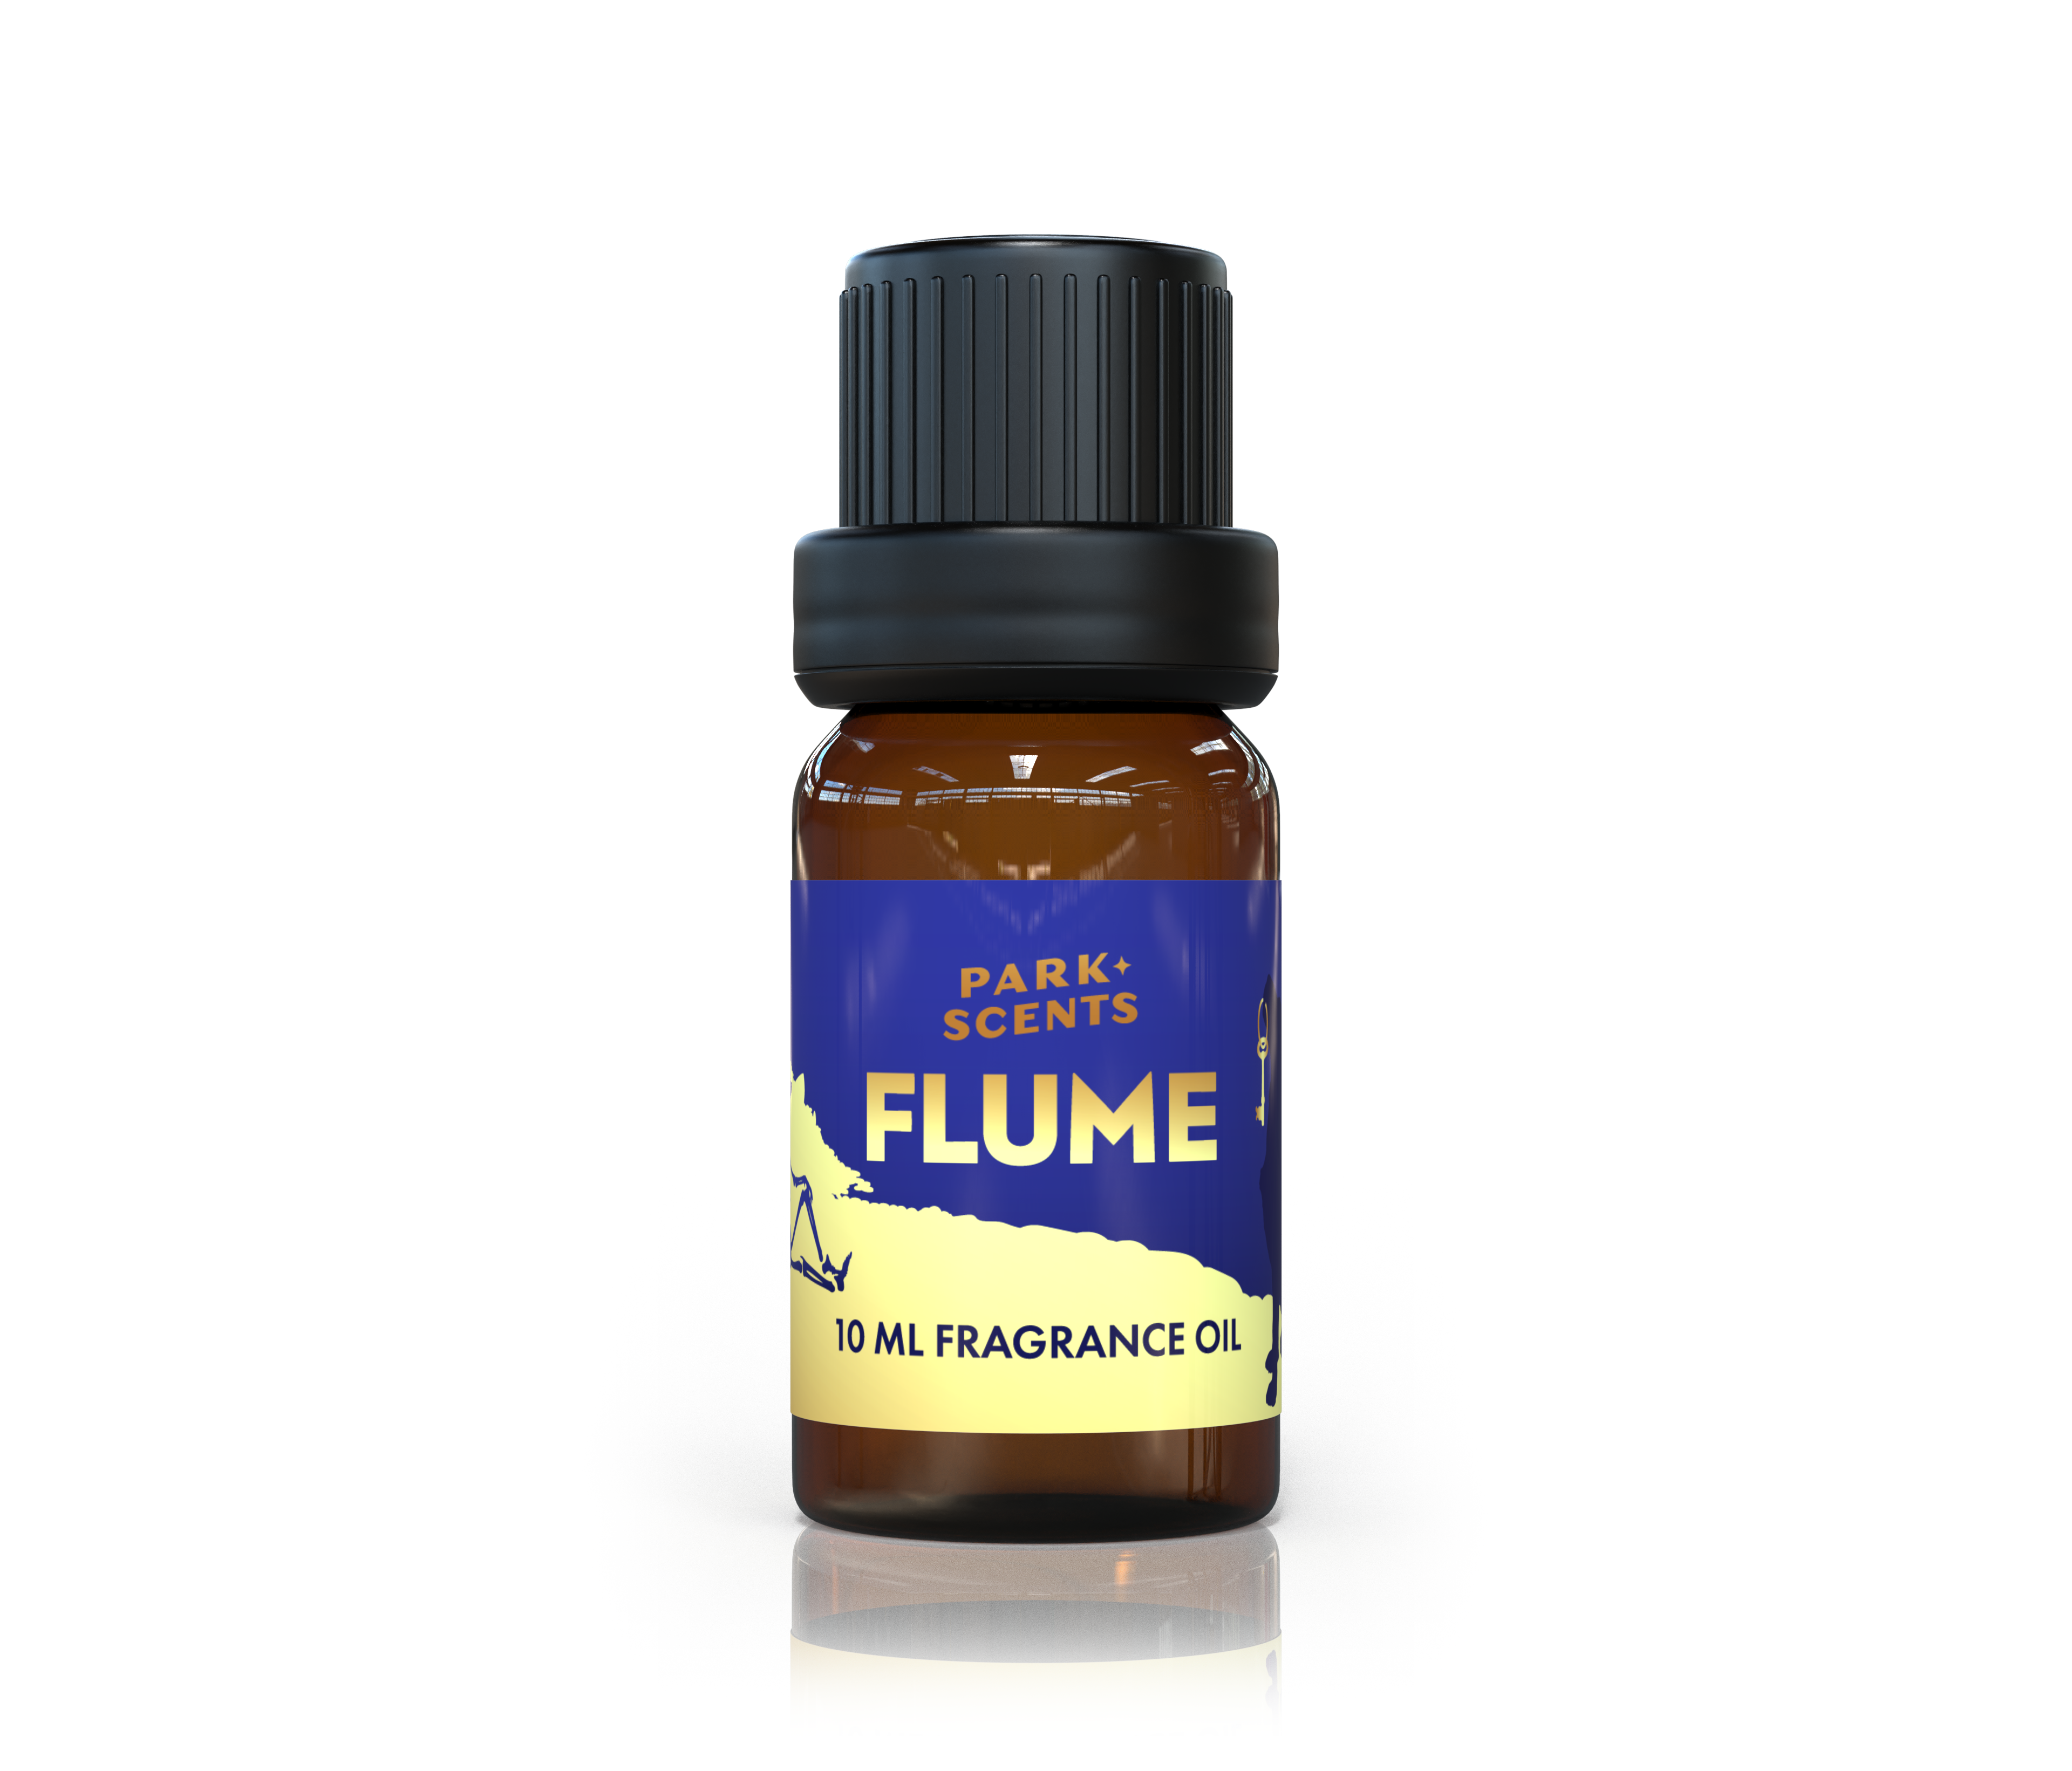 Flume Wax Melts